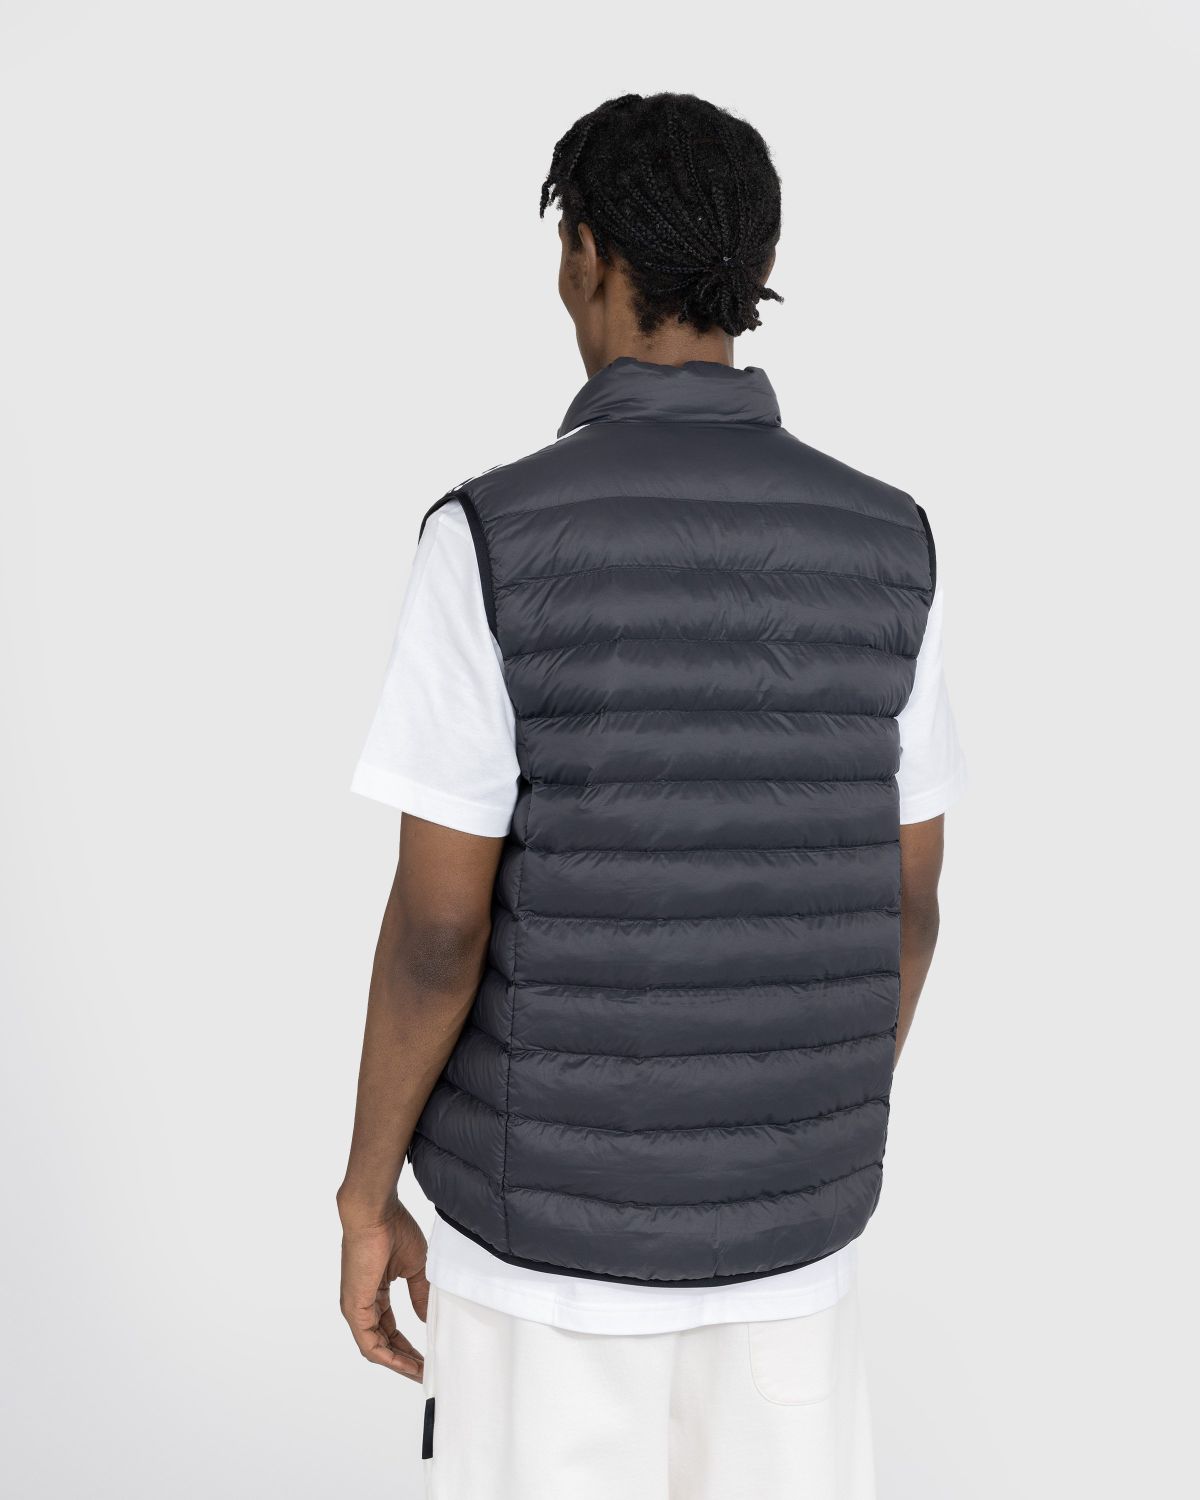 Adidas – Shop Padded Vest Black/White Highsnobiety 